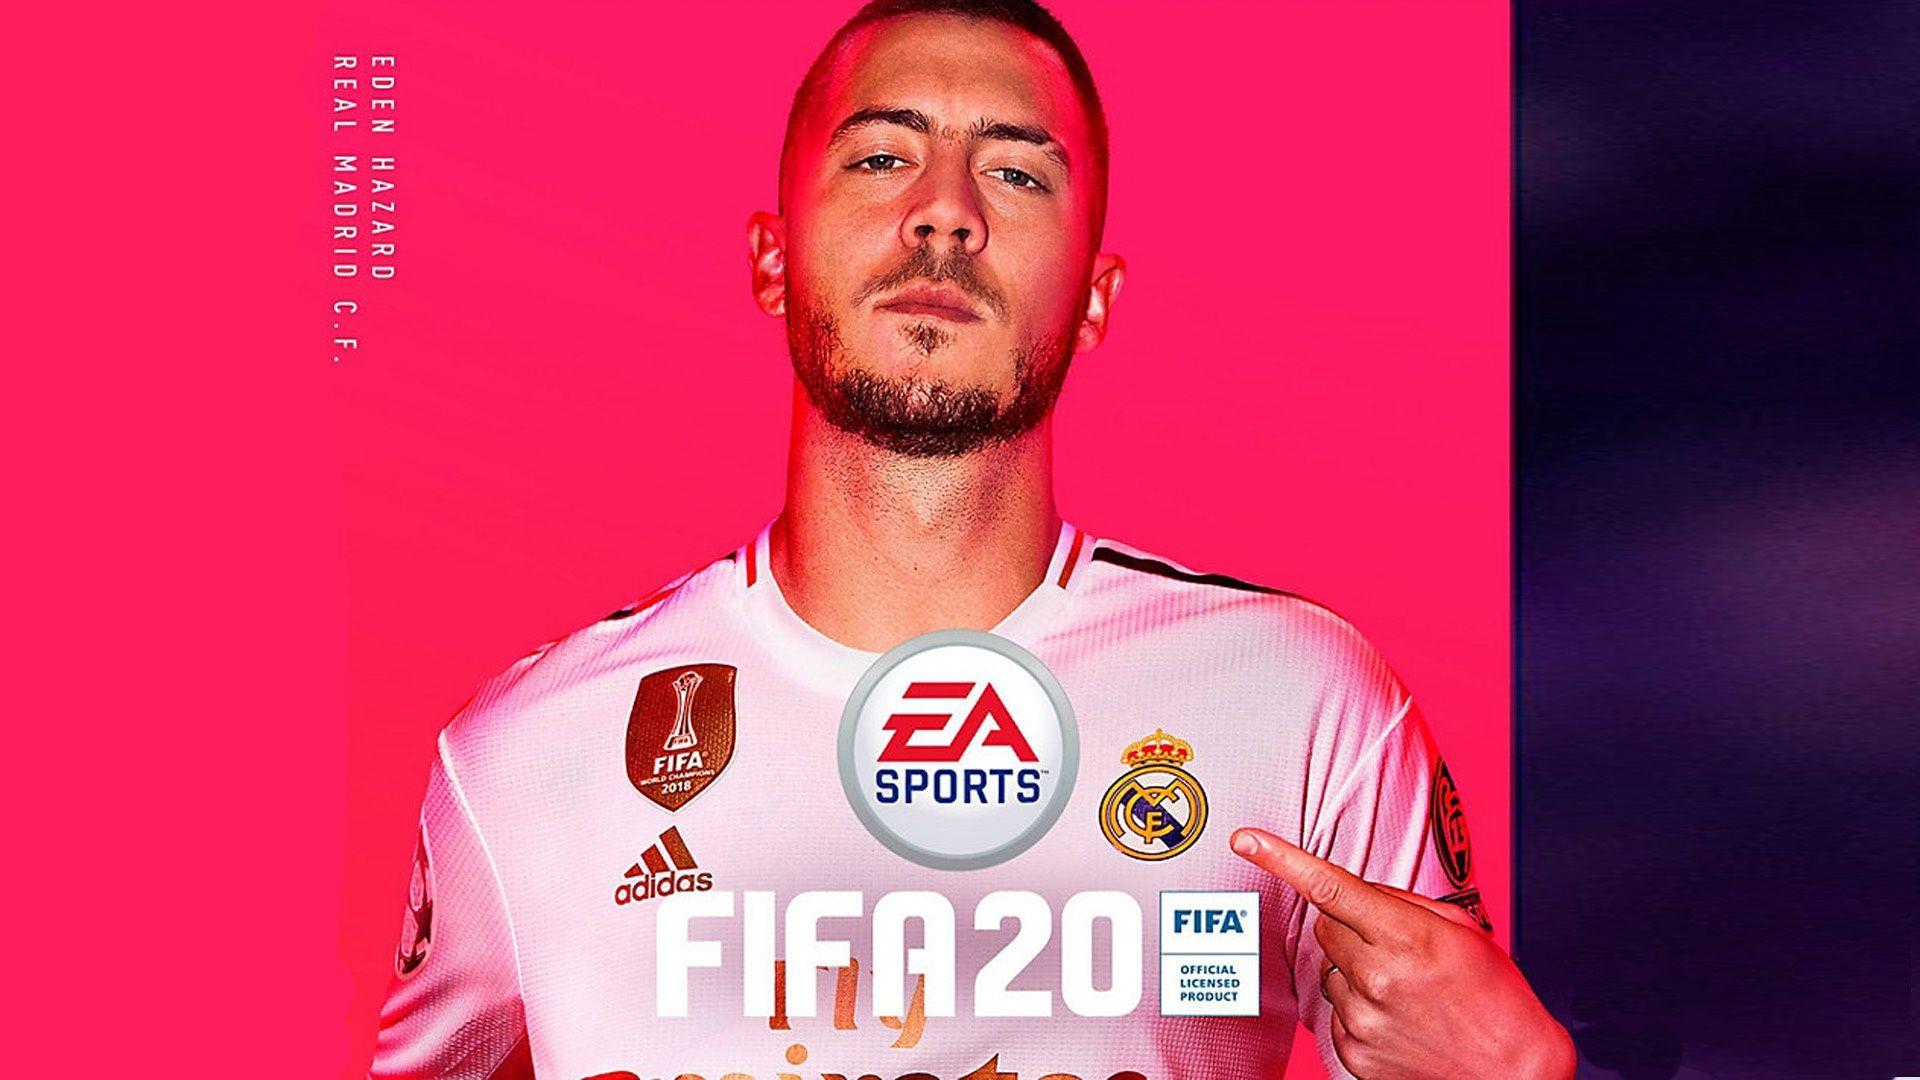 EA SPORTS Unveils Eden Hazard And Virgil Van Dijk On Covers Of FIFA